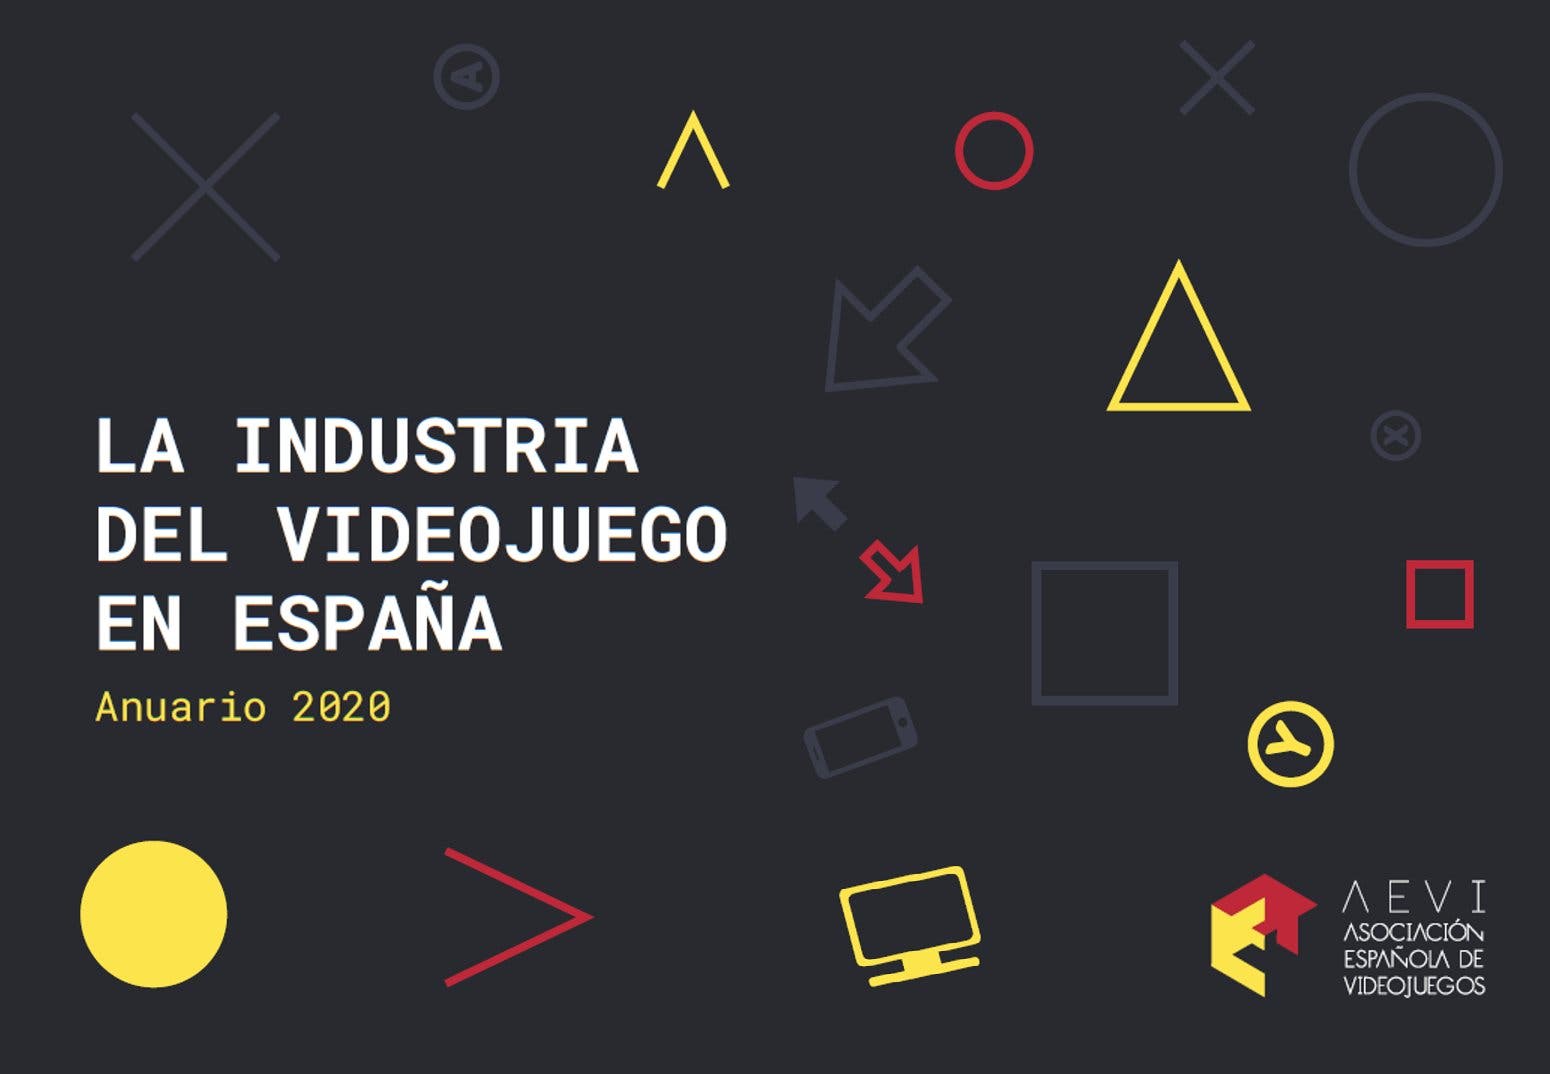 AEVI comparte el Anuario de la industria del videojuego en España en 2020